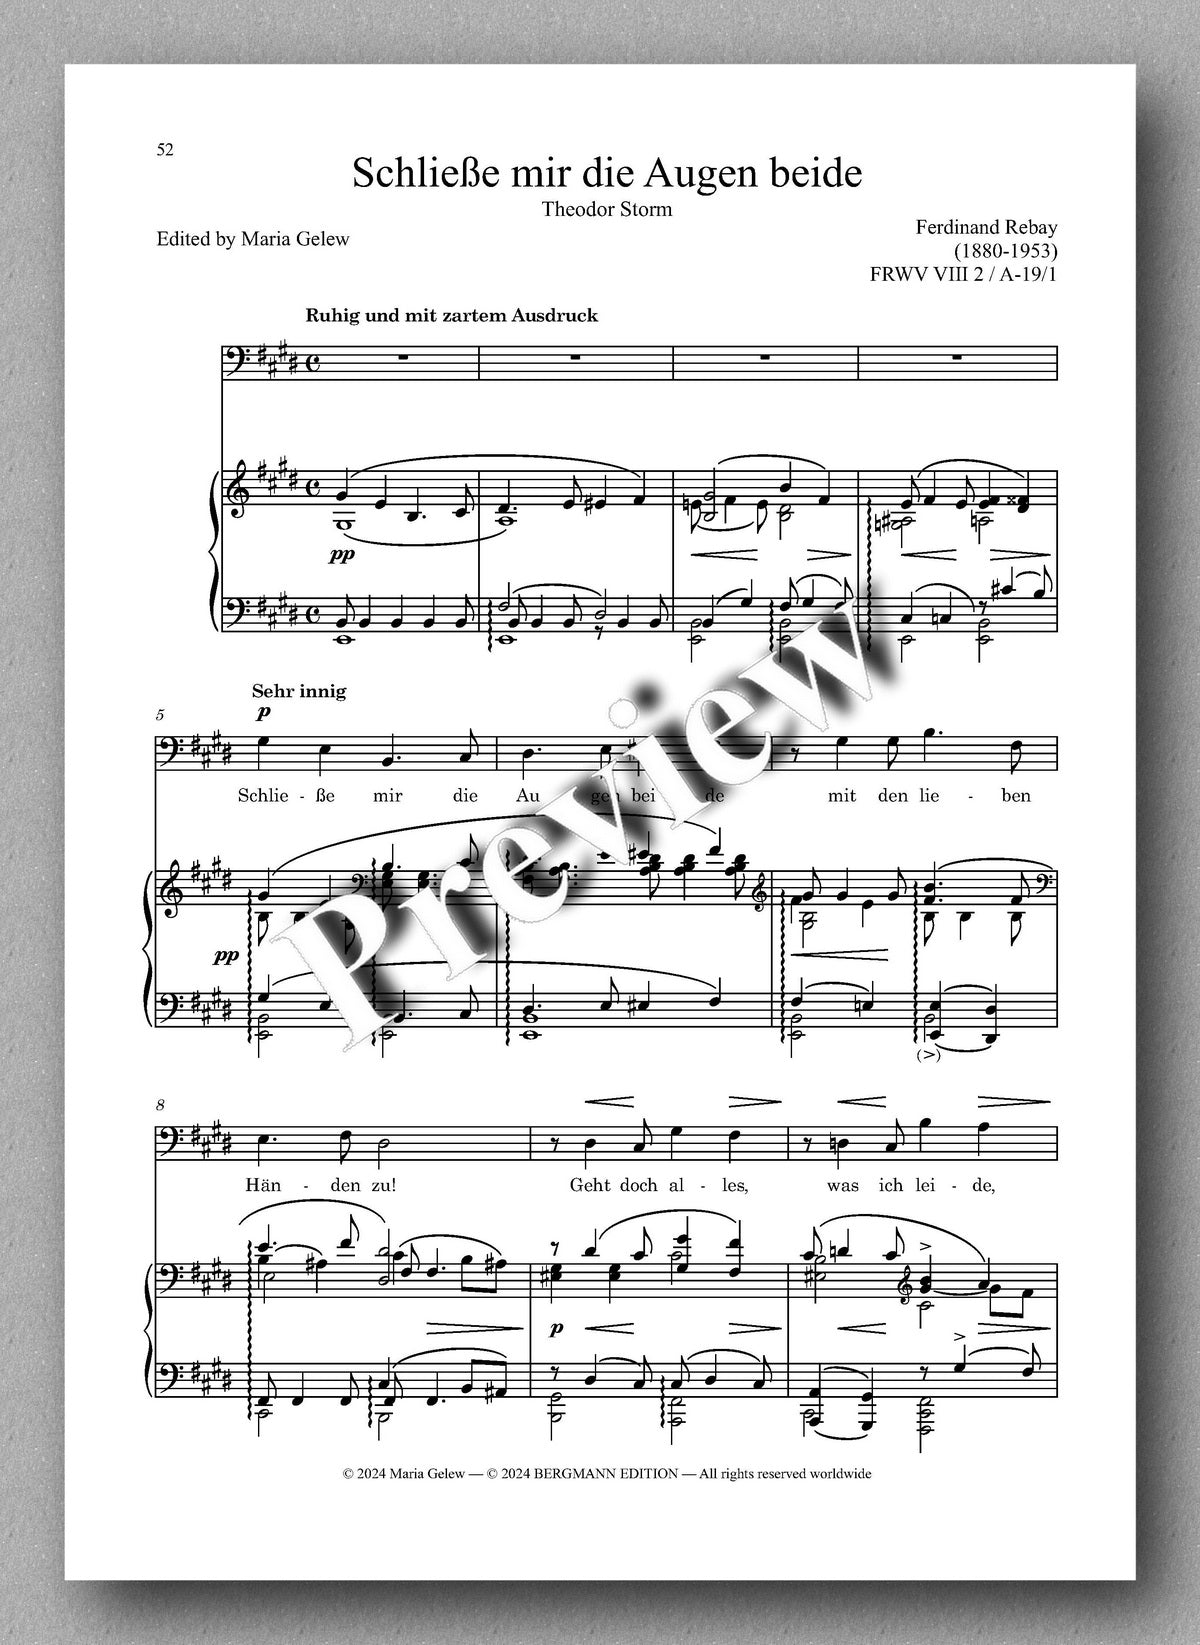 Rebay, Lieder No. 16, Lieder nach Gedichten verschiedener Dichter - preview of the music score 5